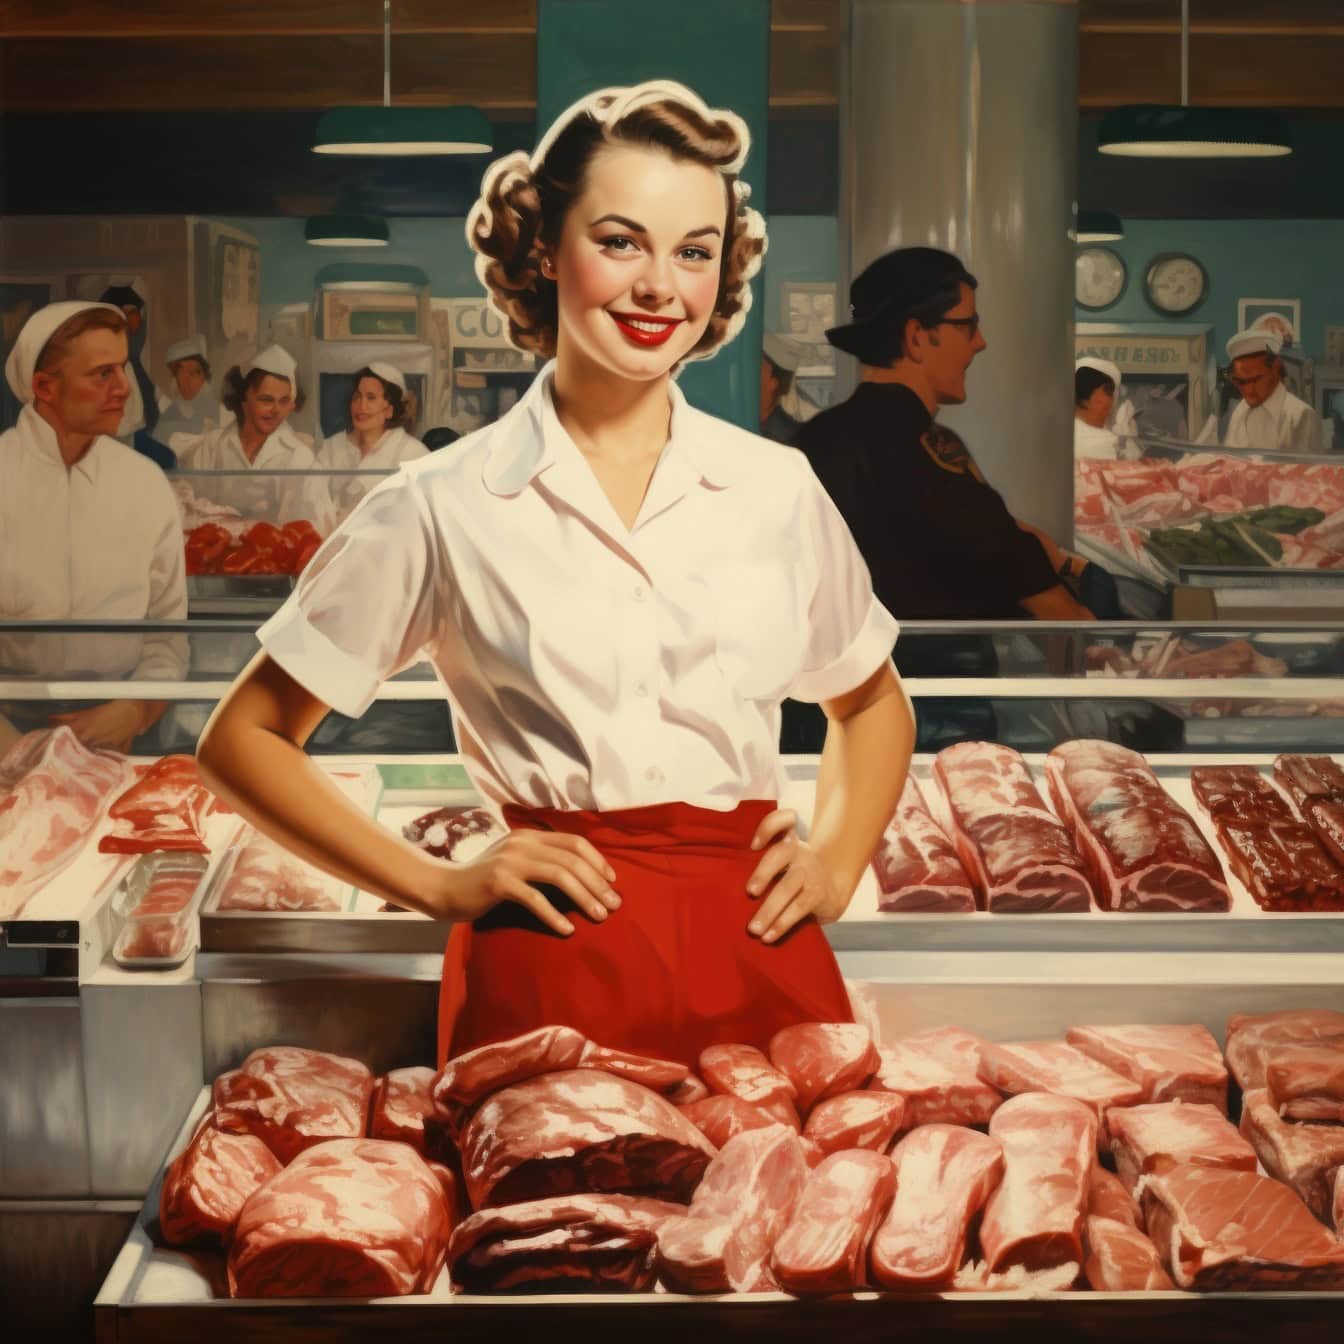 Hentesasszony áll a hús előtt egy hentesüzletben vagy szupermarketben, illusztráció az 1960-as évek stílusában